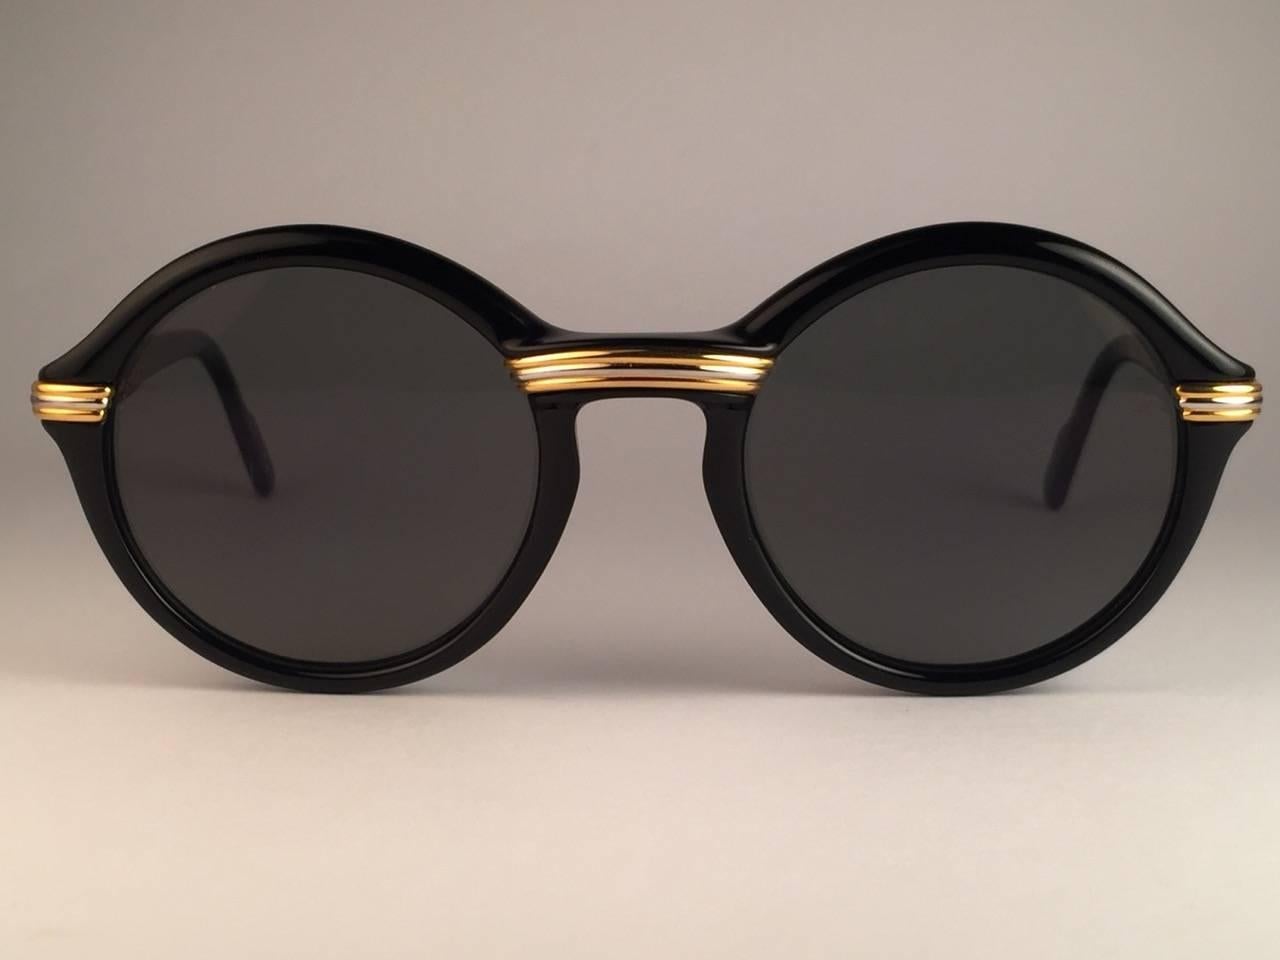 Vintage By  1991 Original Cartier Cabriolet Art Deco Schwarz & Gold Sonnenbrille mit grauem leichten Spiegel  ( uv schutz ) gläser. 
Der Rahmen hat in der Mitte und an den Seiten die berühmten Akzente aus echtem Gold und Weißgold.  Alle